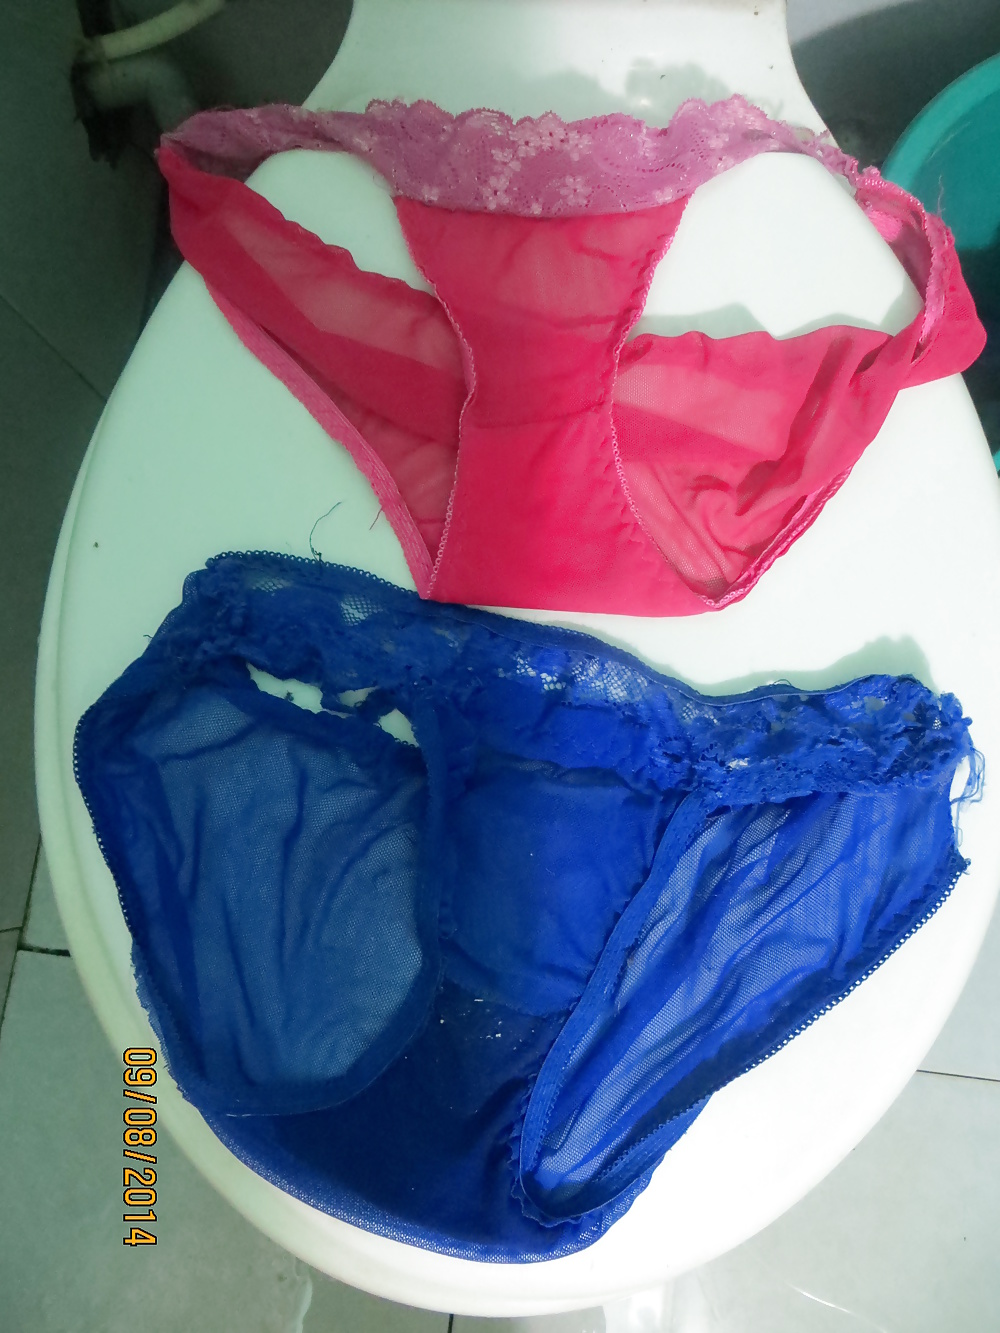 Porn Pics Sexy panties & bras of my sexy milf neighbour 9-8-2014